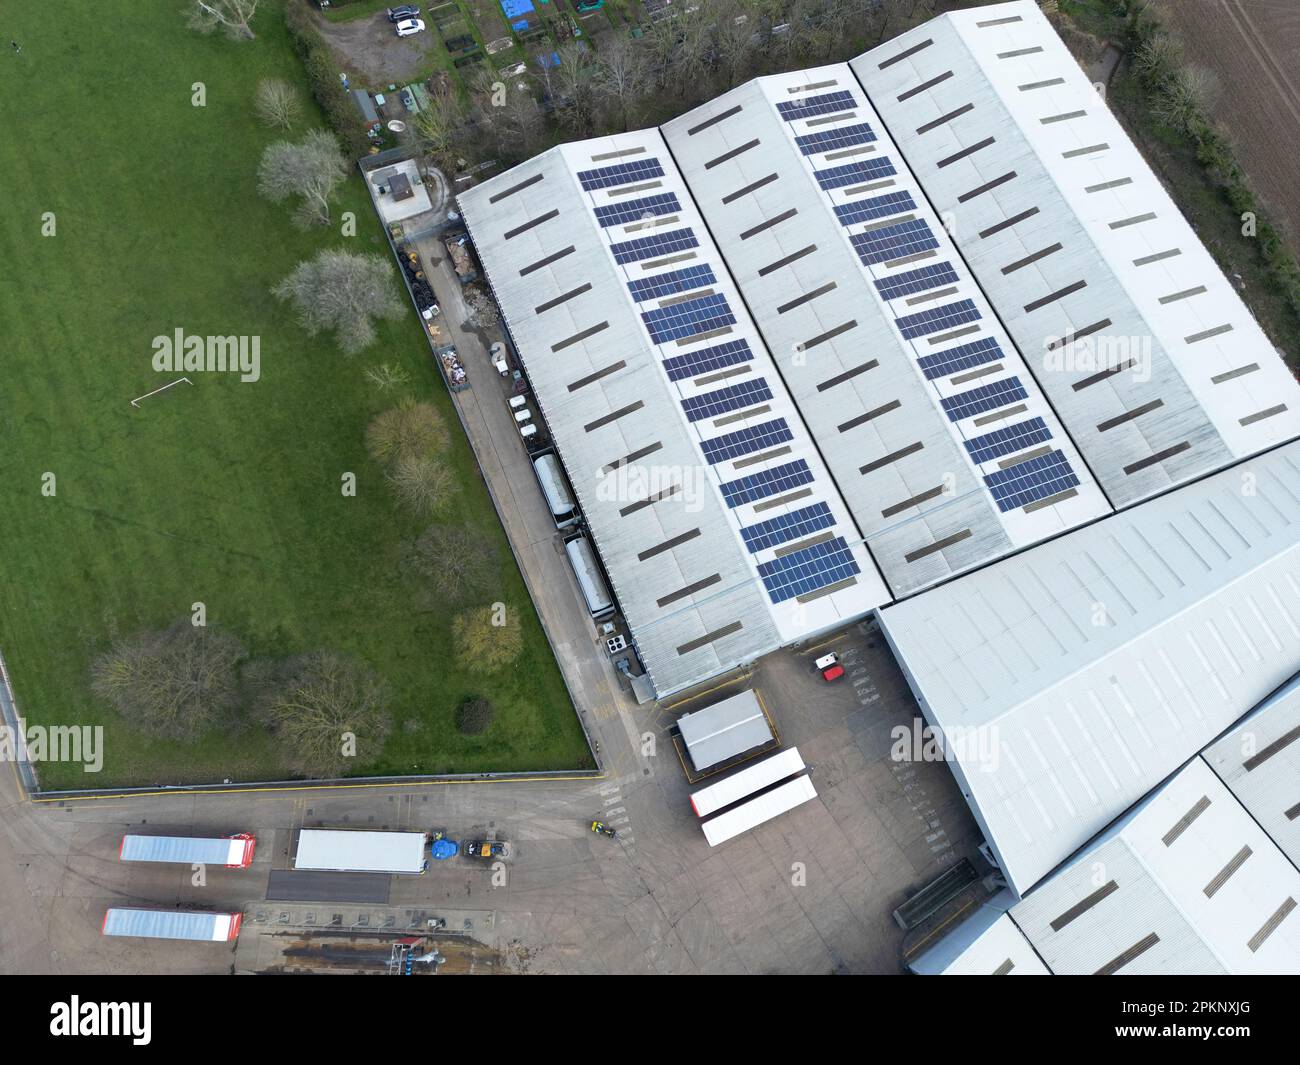 Drone vista dall'alto verso il basso di un grande magazzino che mostra pannelli solari parziali sui tetti. I camion e i rimorchi possono essere visti nel cortile. Foto Stock